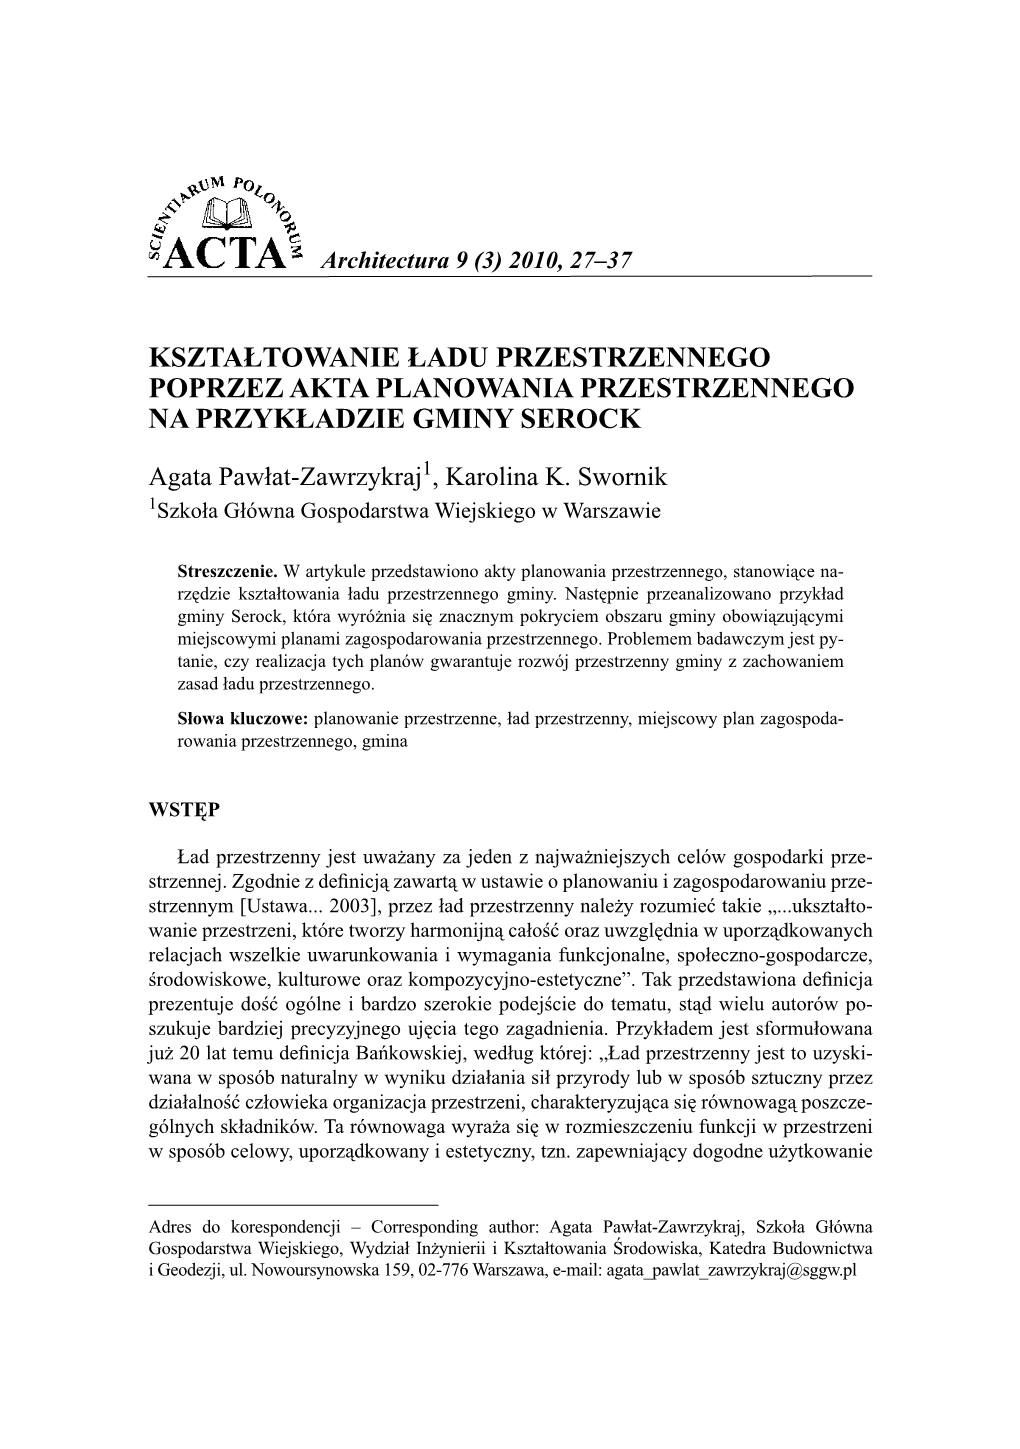 Acta Arch.9(3)2010.Indb